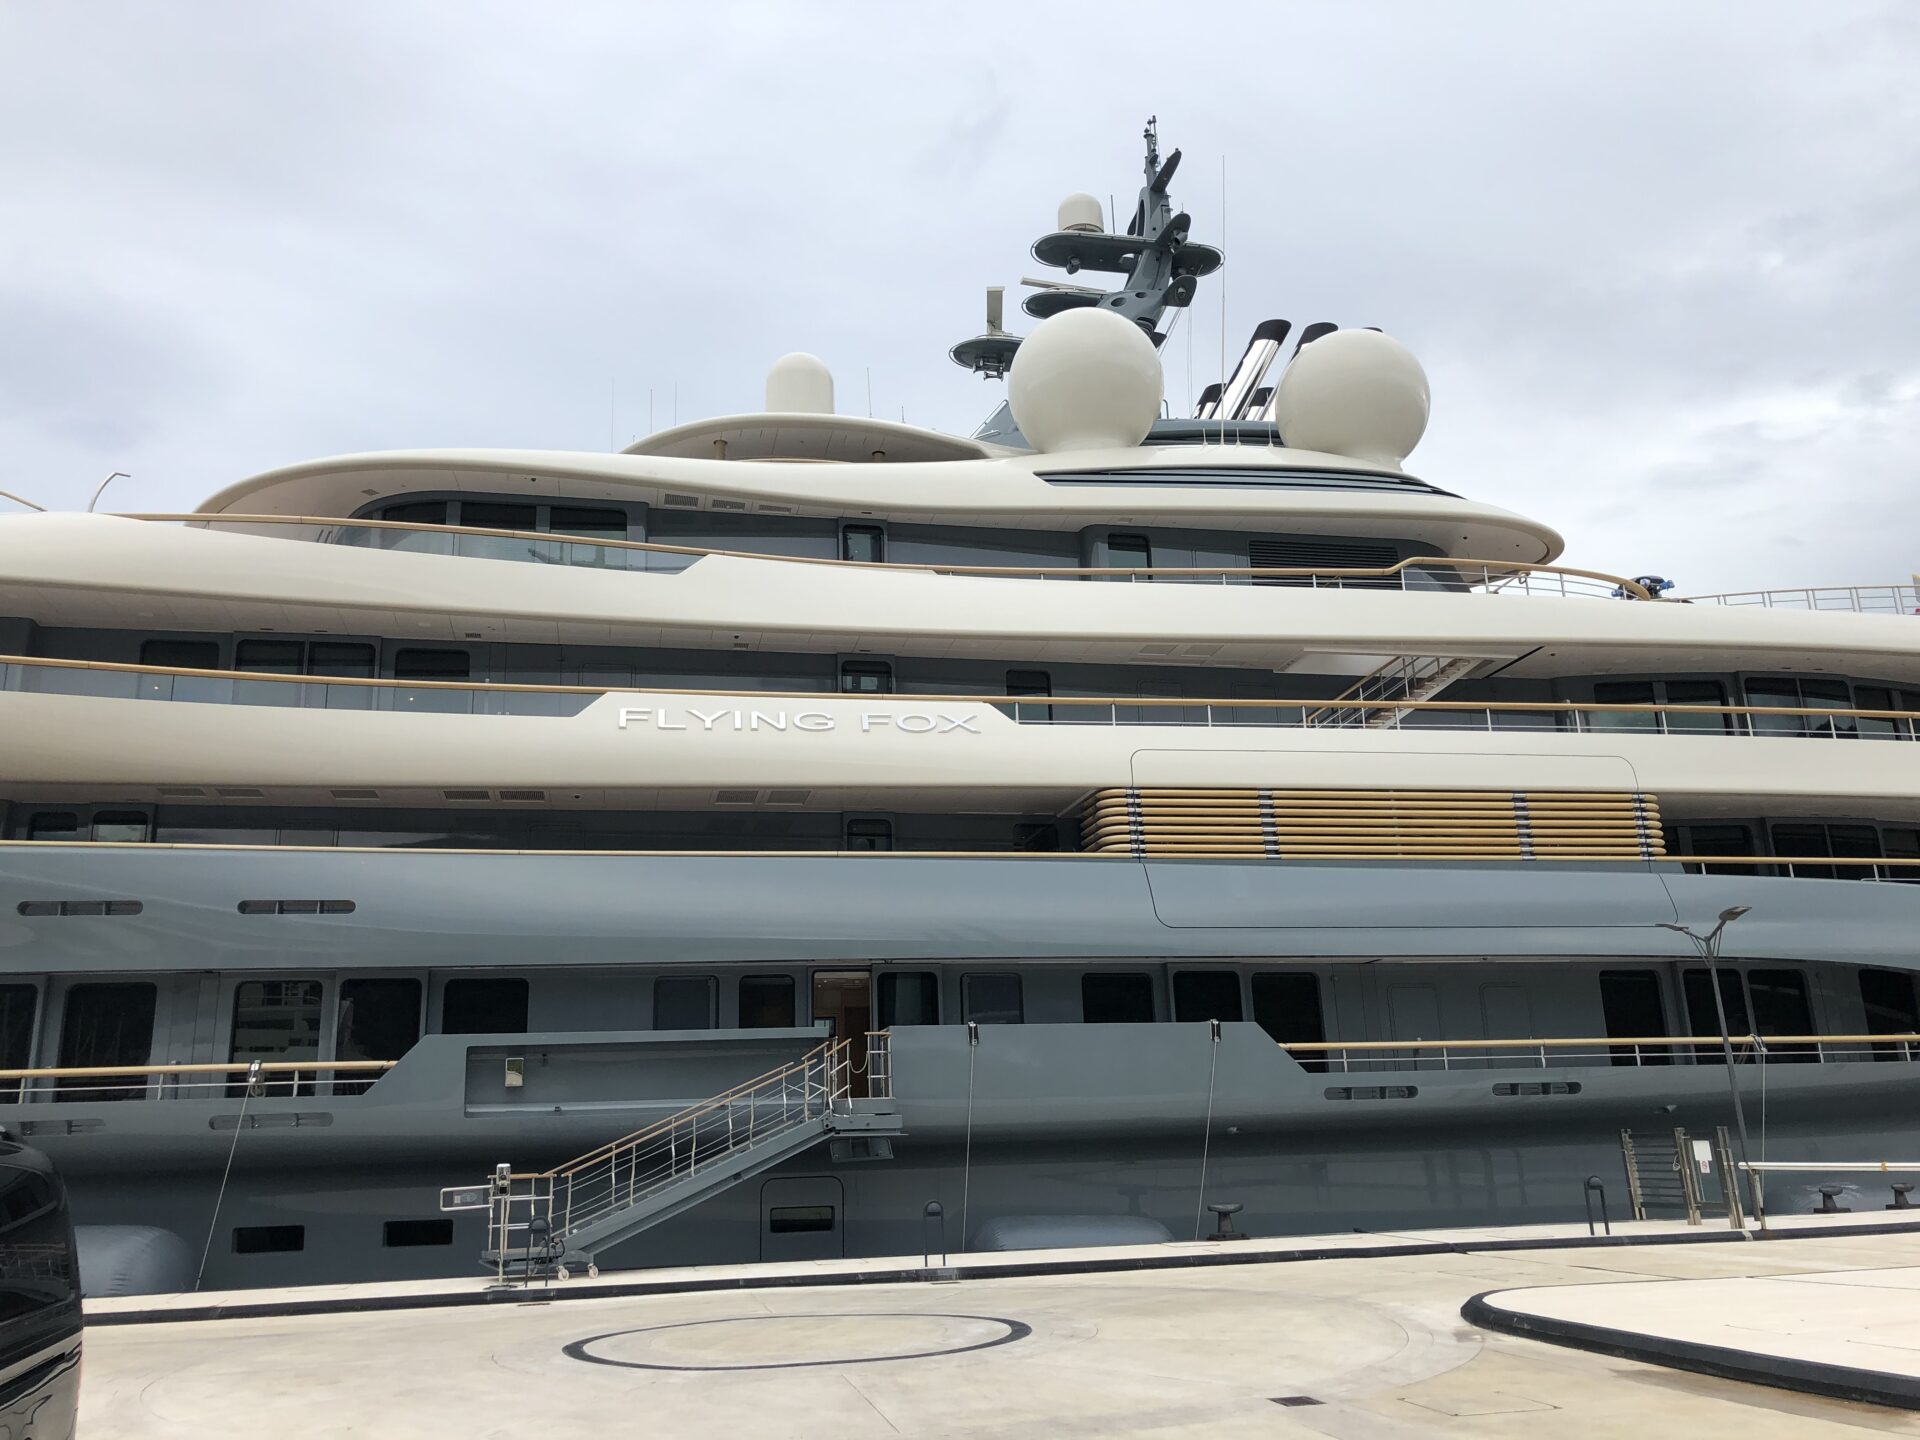 Flying Fox il charter yacht più grande al mondo